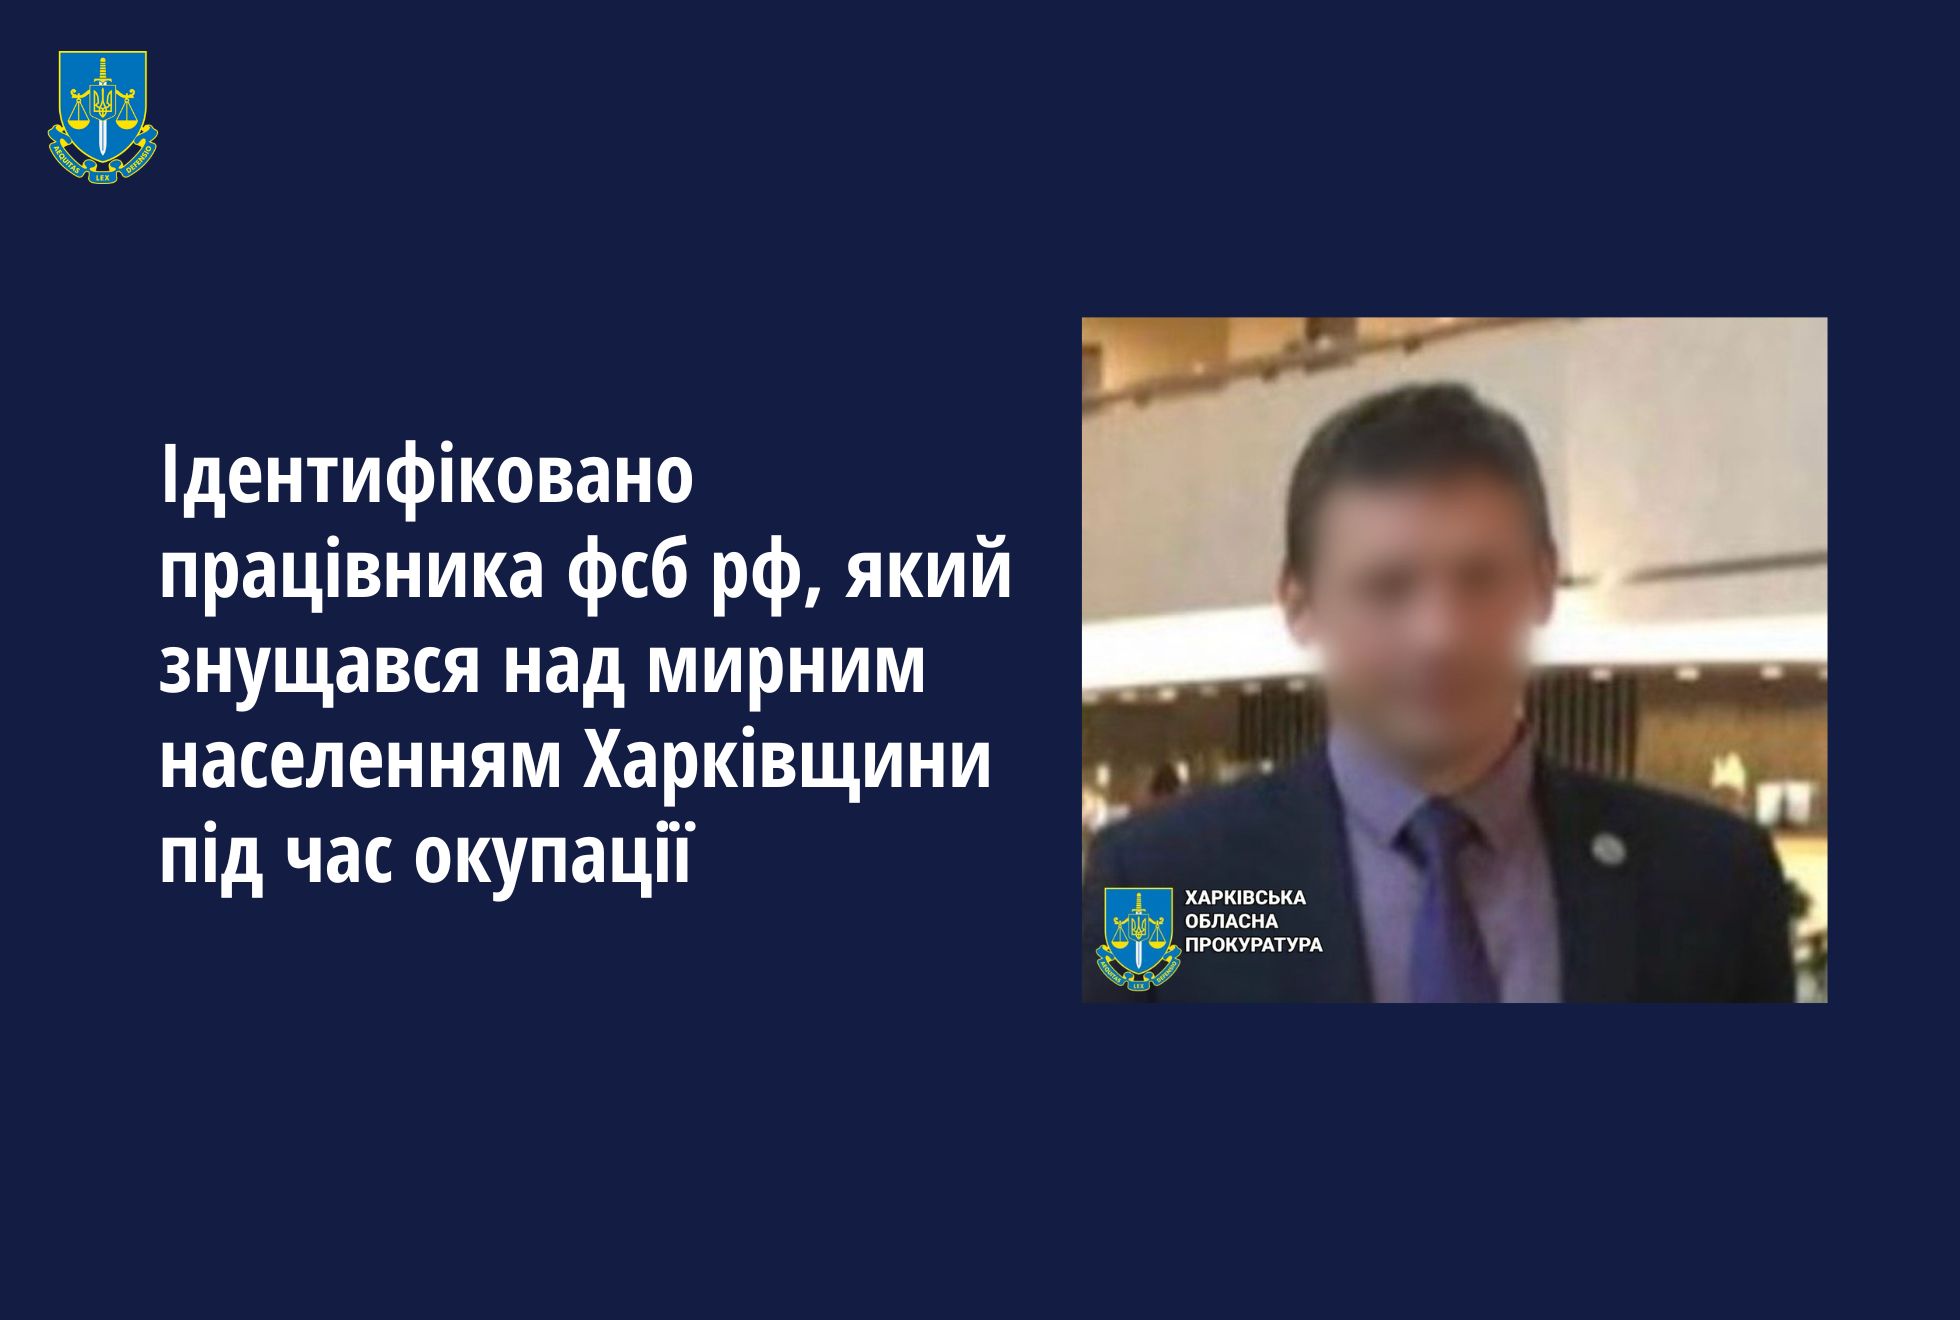 Ідентифіковано працівника фсб рф, який знущався над мирним населенням Харківщини під час окупації